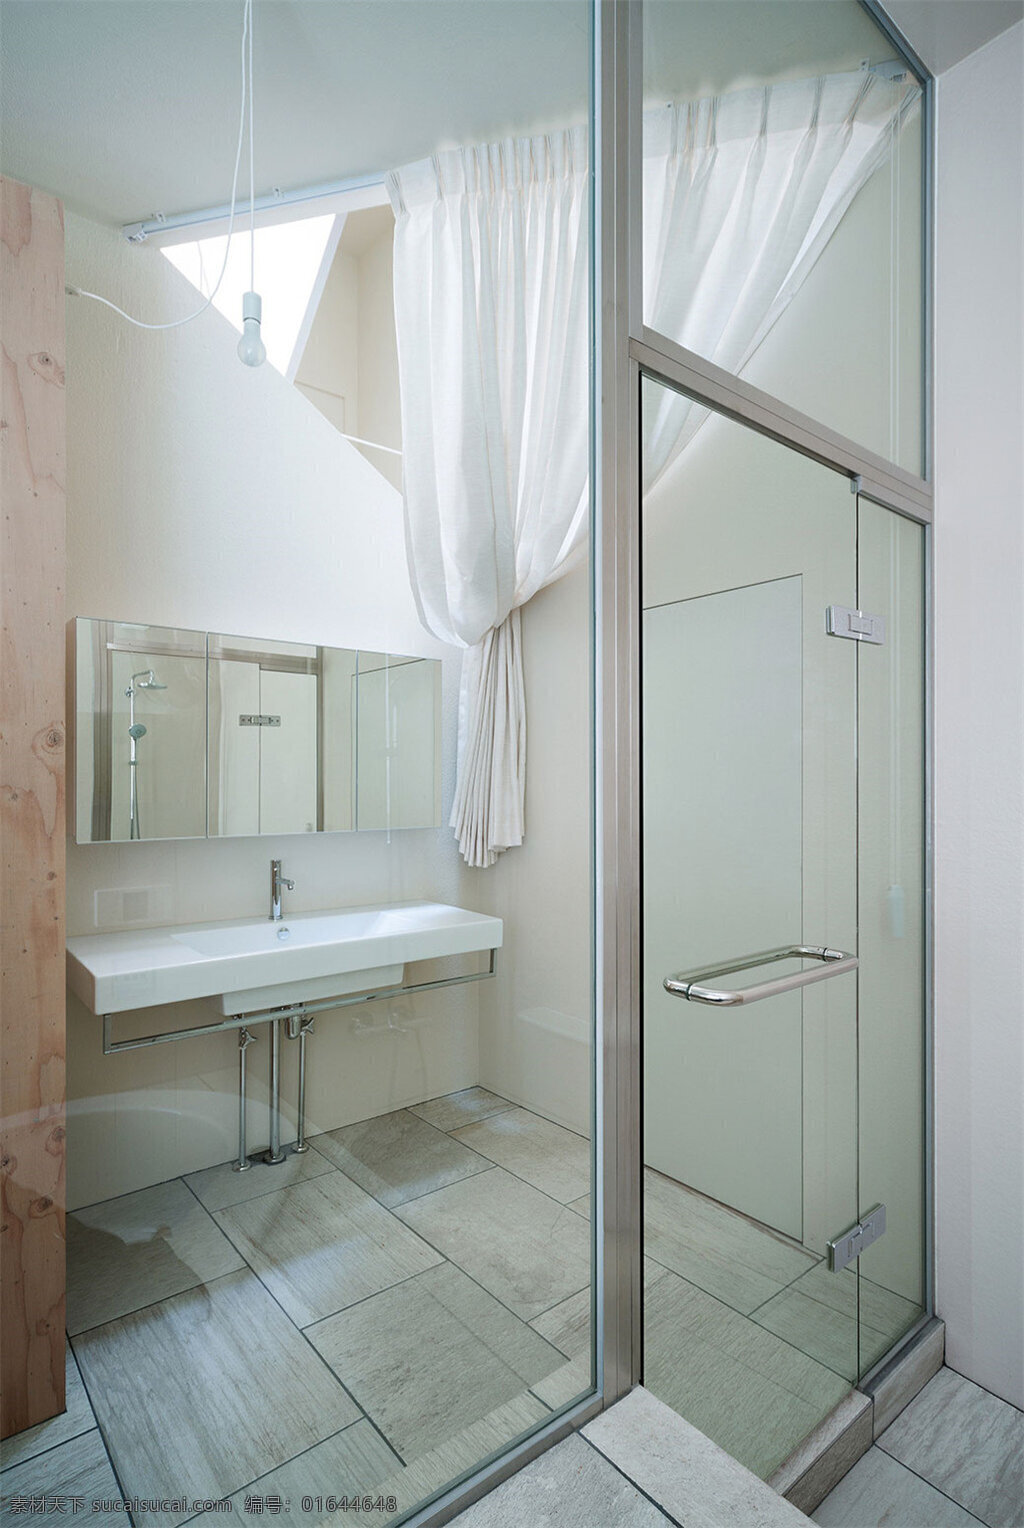 简约 浴室 透明 玻璃 室内装修 效果图 浴室装修 白色窗帘 白色洗手台 透明玻璃